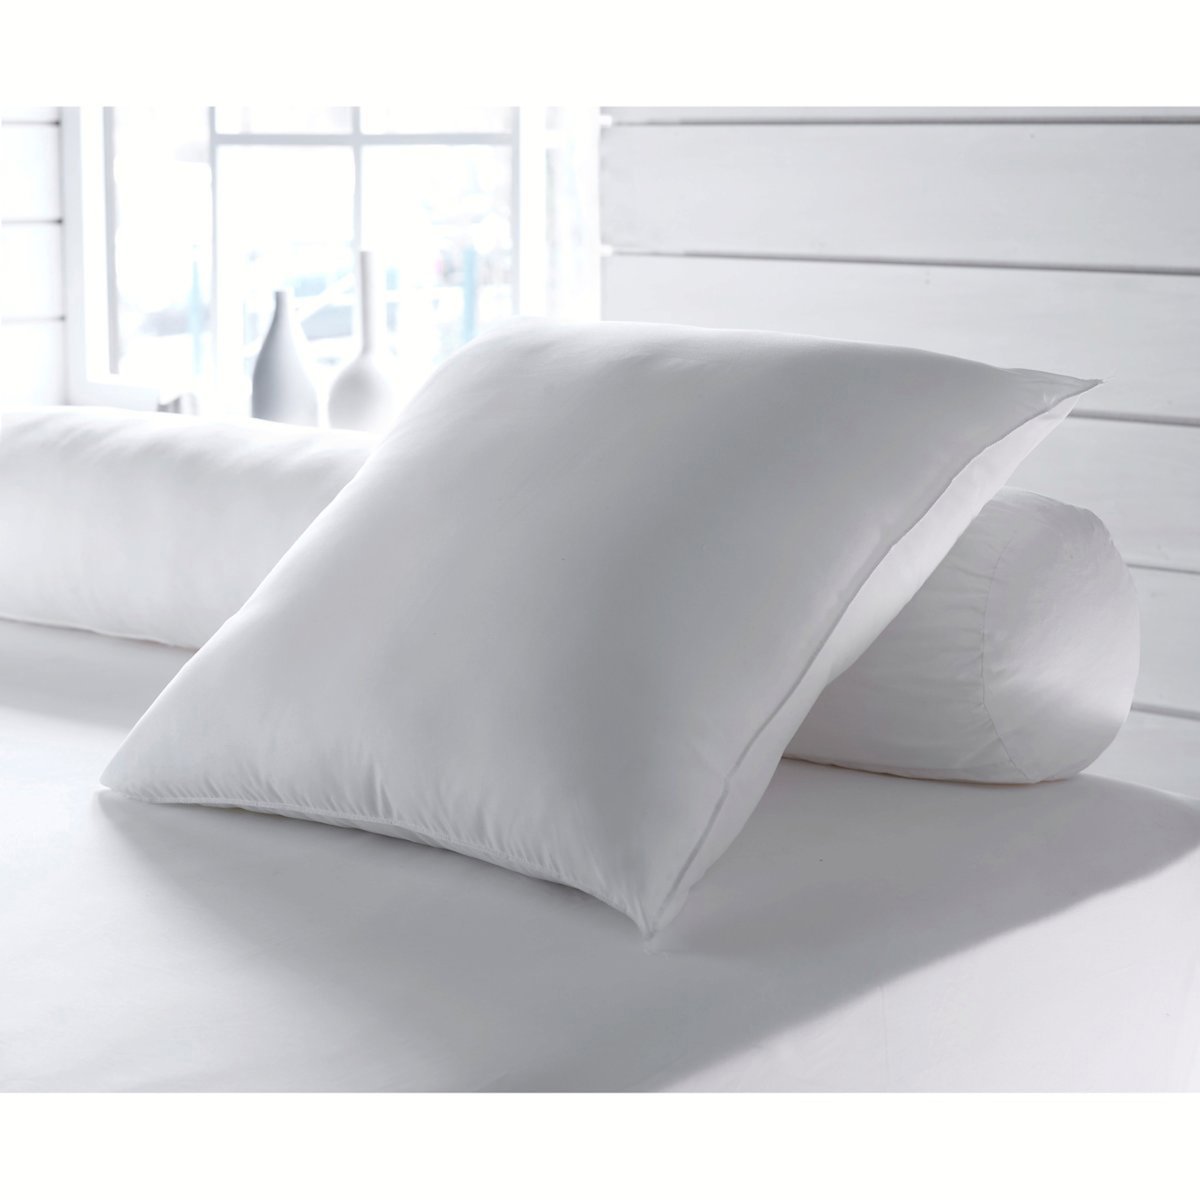 Одеяло La Redoute Экологичное синтетическое с обработкой против клещей Proneem стандартное качество 200 x 200 см белый, размер 200 x 200 см - фото 2